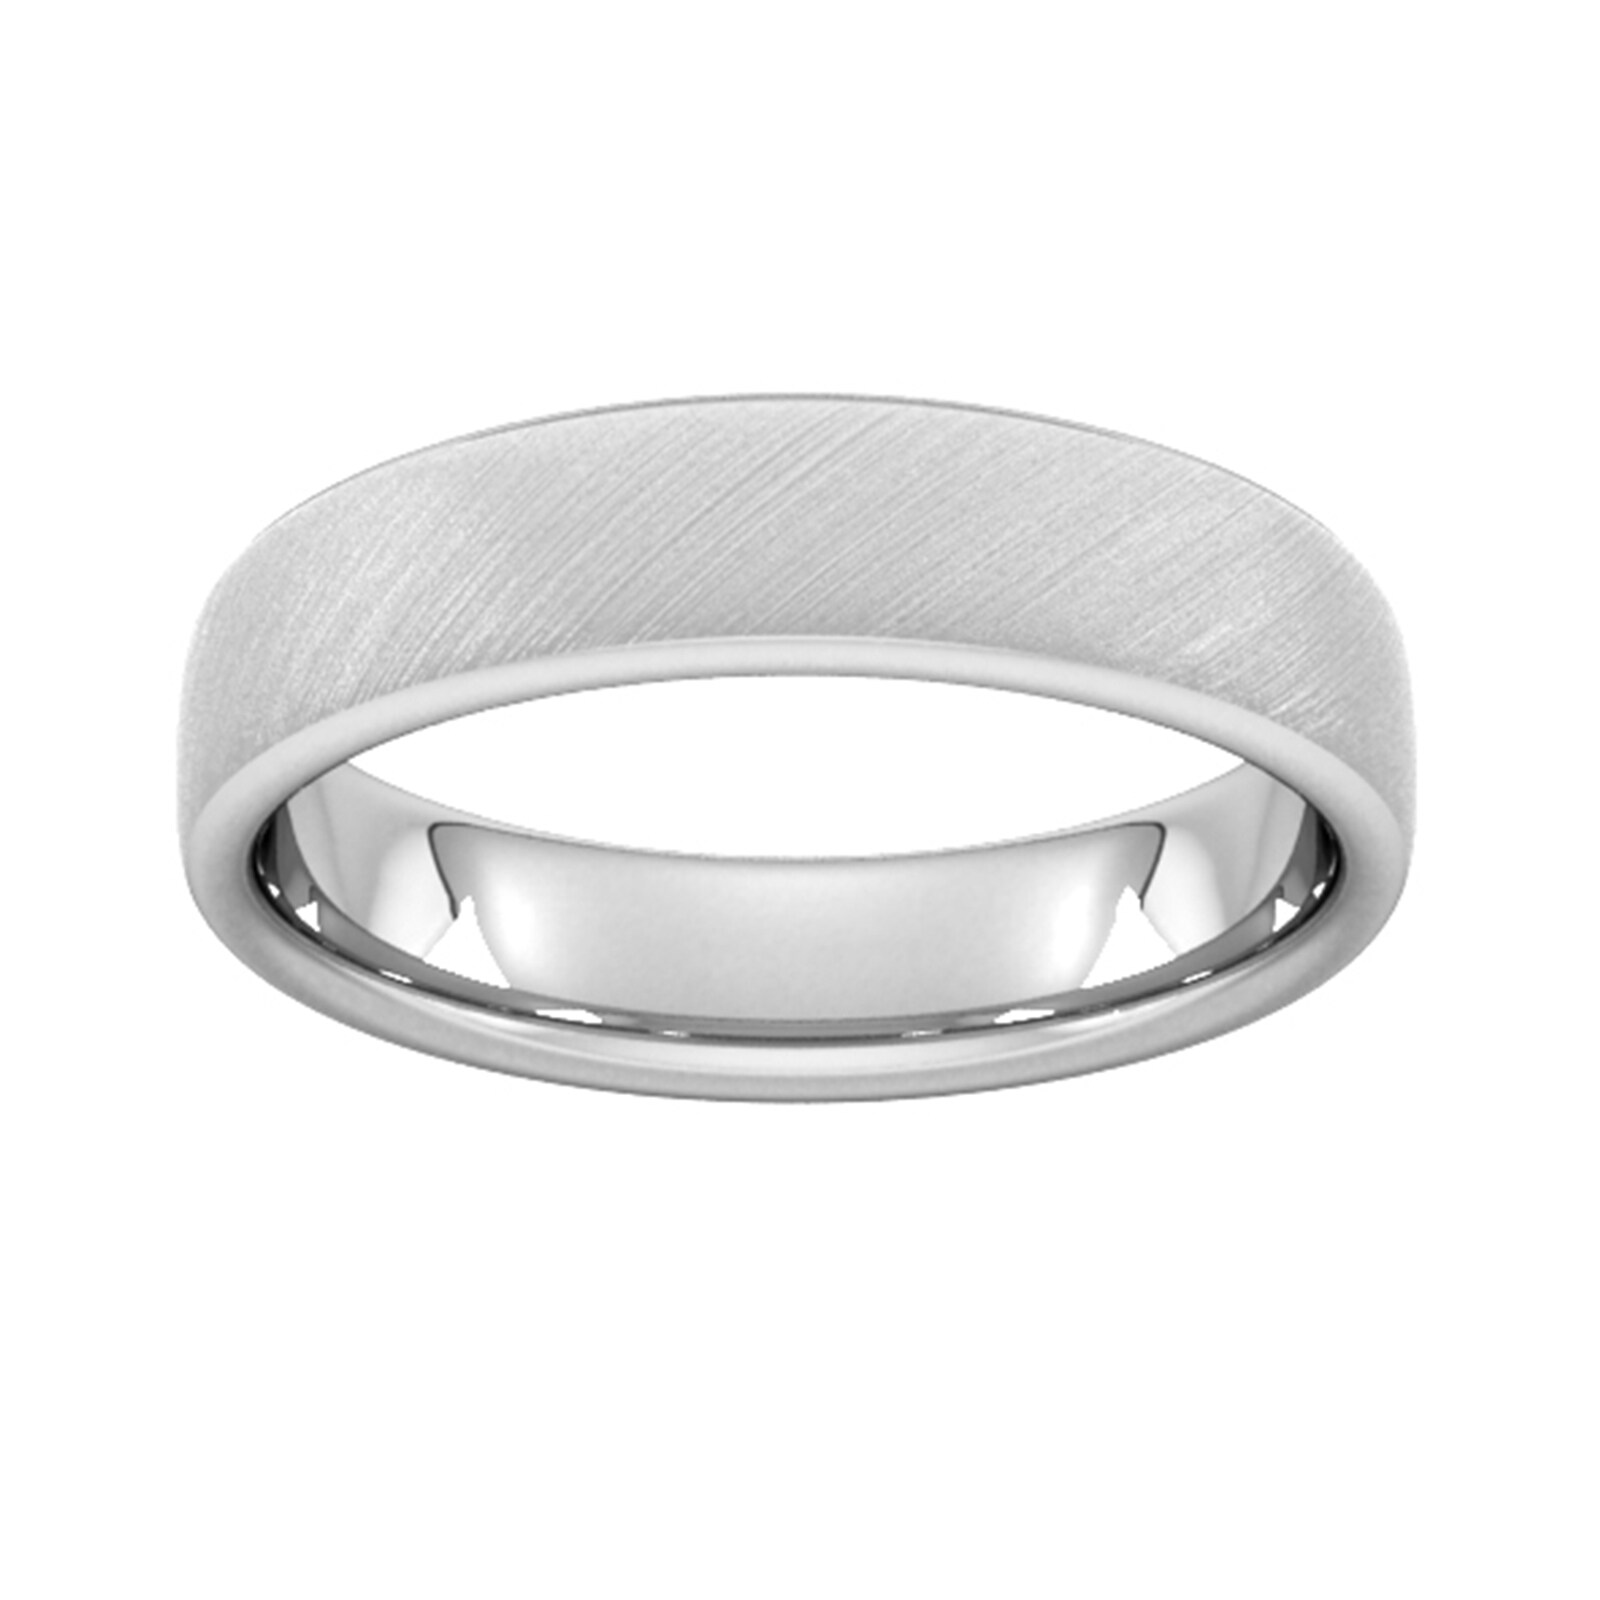 5mm Traditional Court Heavy Diagonal Matt Finish Wedding Ring In 950 Palladium - Ring Size R